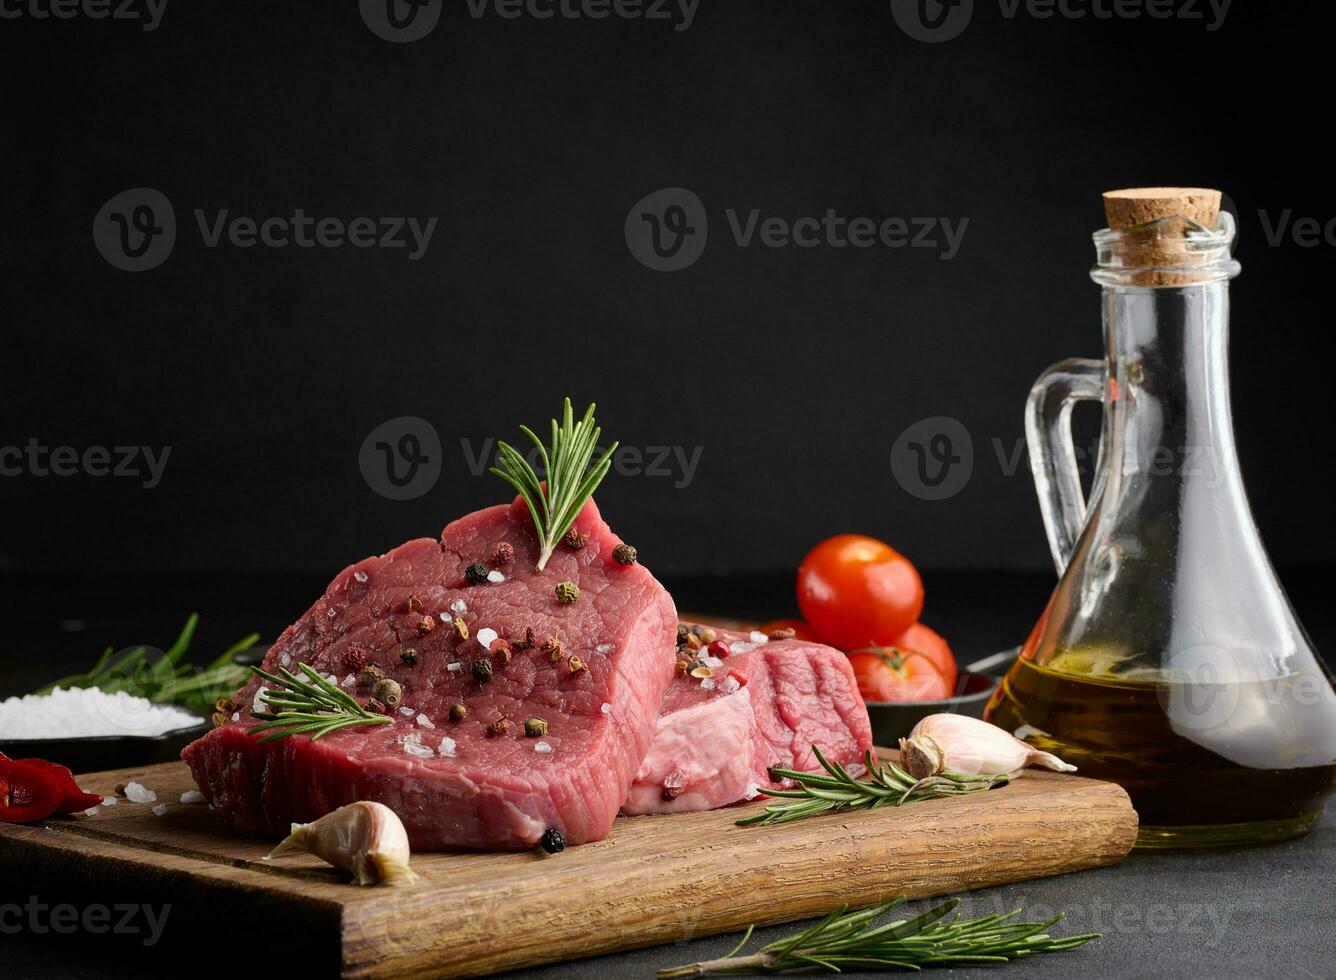 rå bit av nötkött med kryddor peppar, rosmarin kvist, salt och oliv olja på en trä- styrelse, svart bakgrund foto